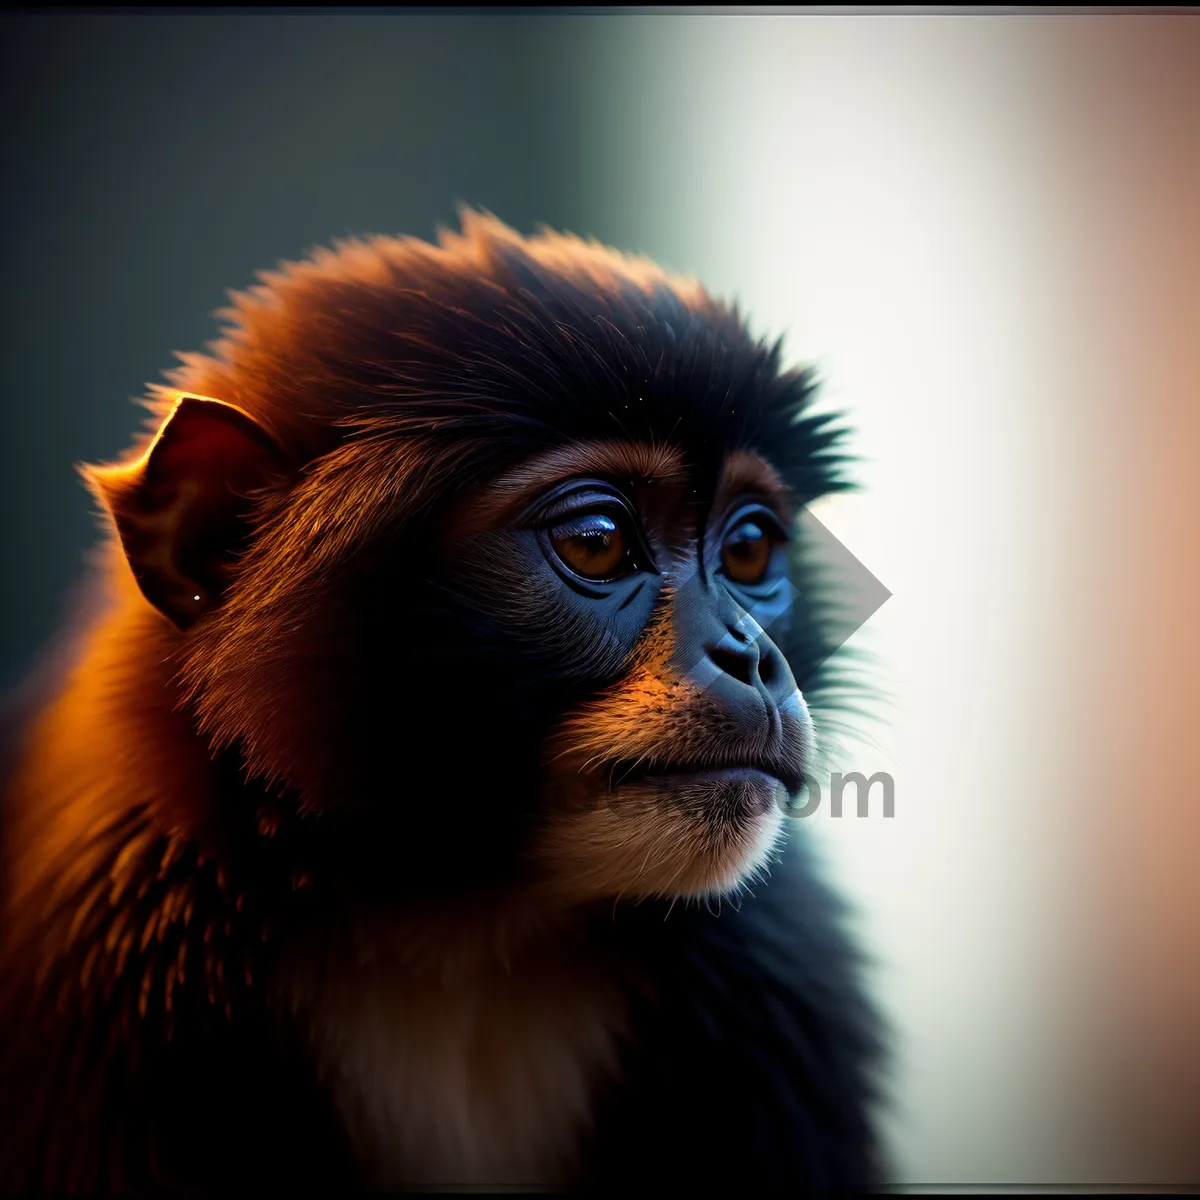 Picture of Playful Orangutan - Jungle's Cutest Primate